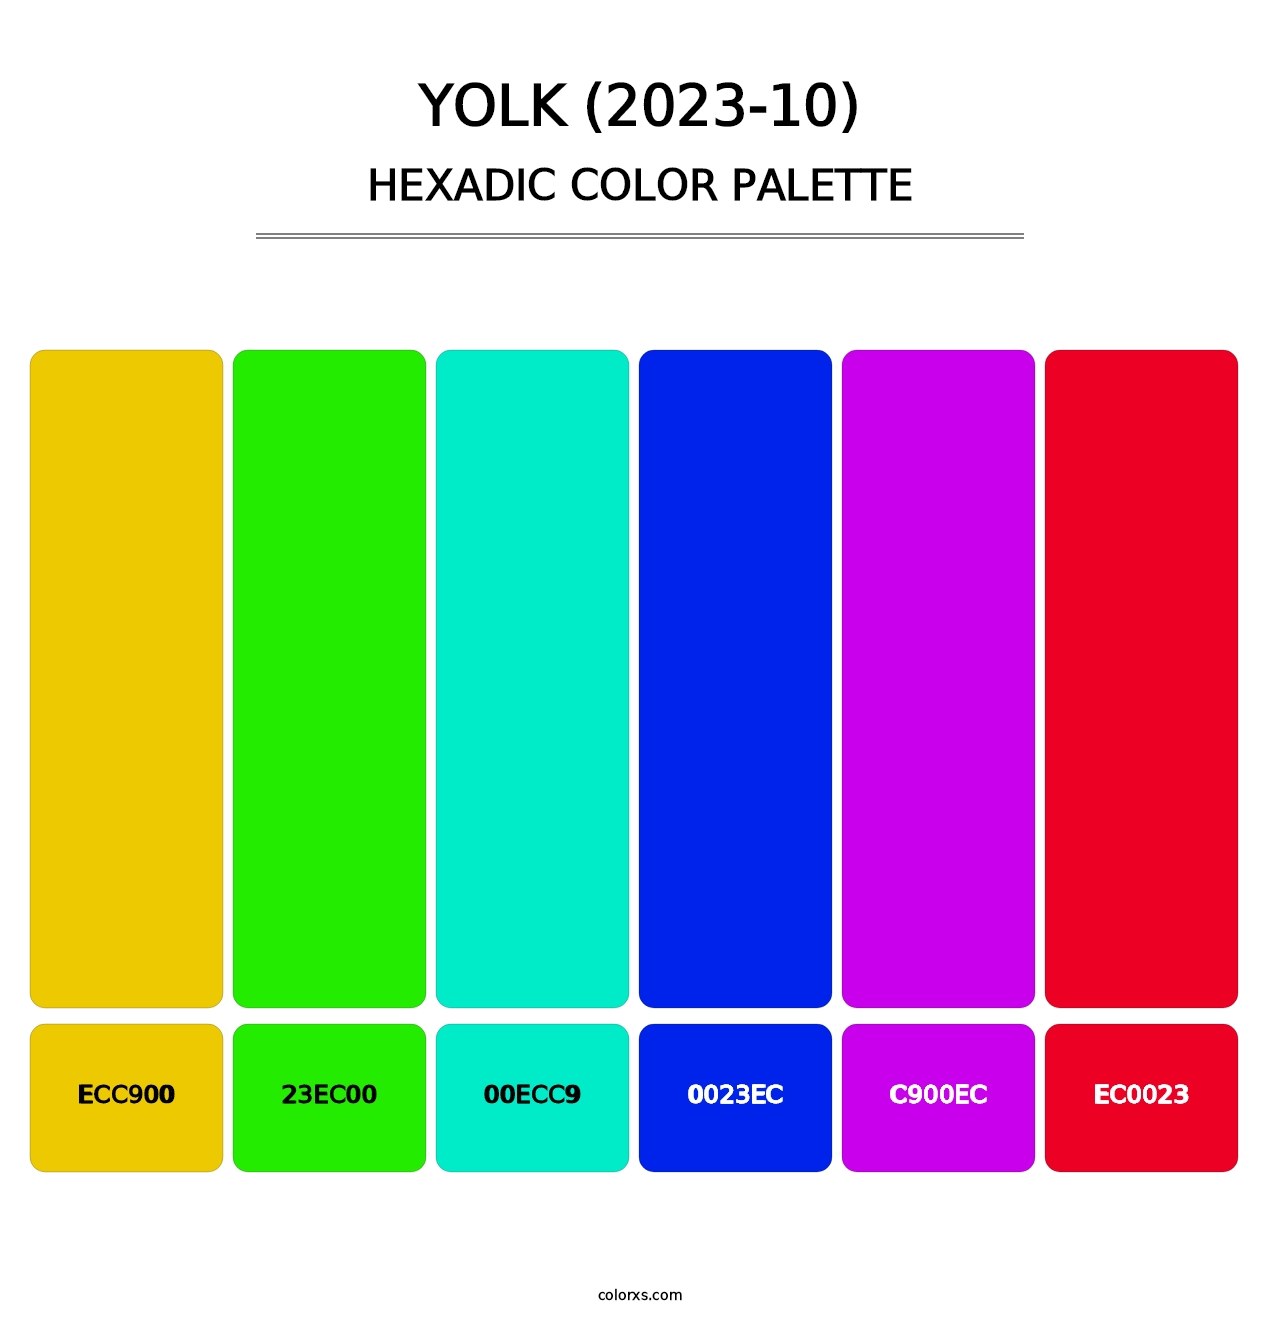 Yolk (2023-10) - Hexadic Color Palette